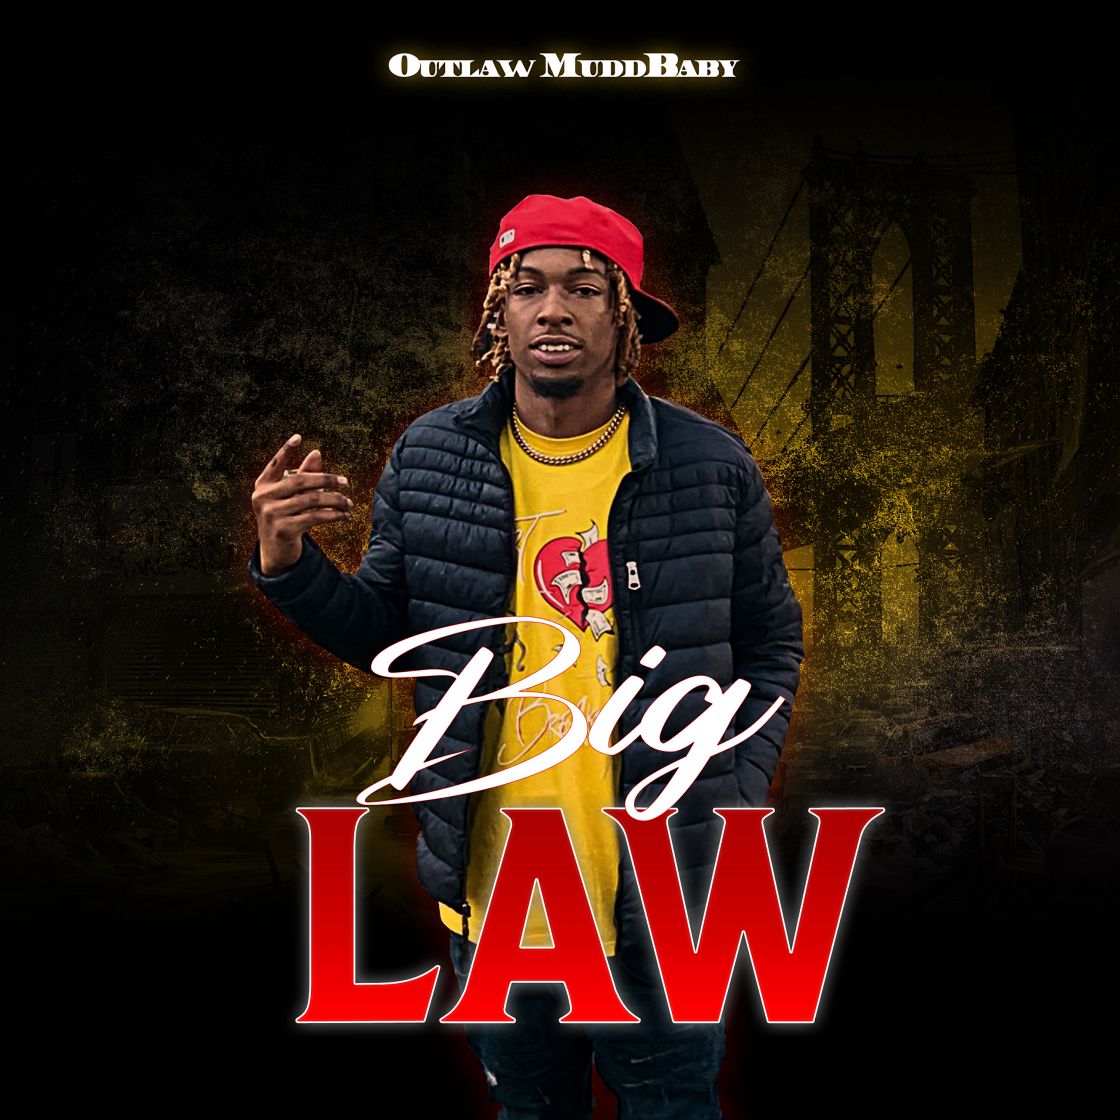 Big Law by Outlaw Muddbaby